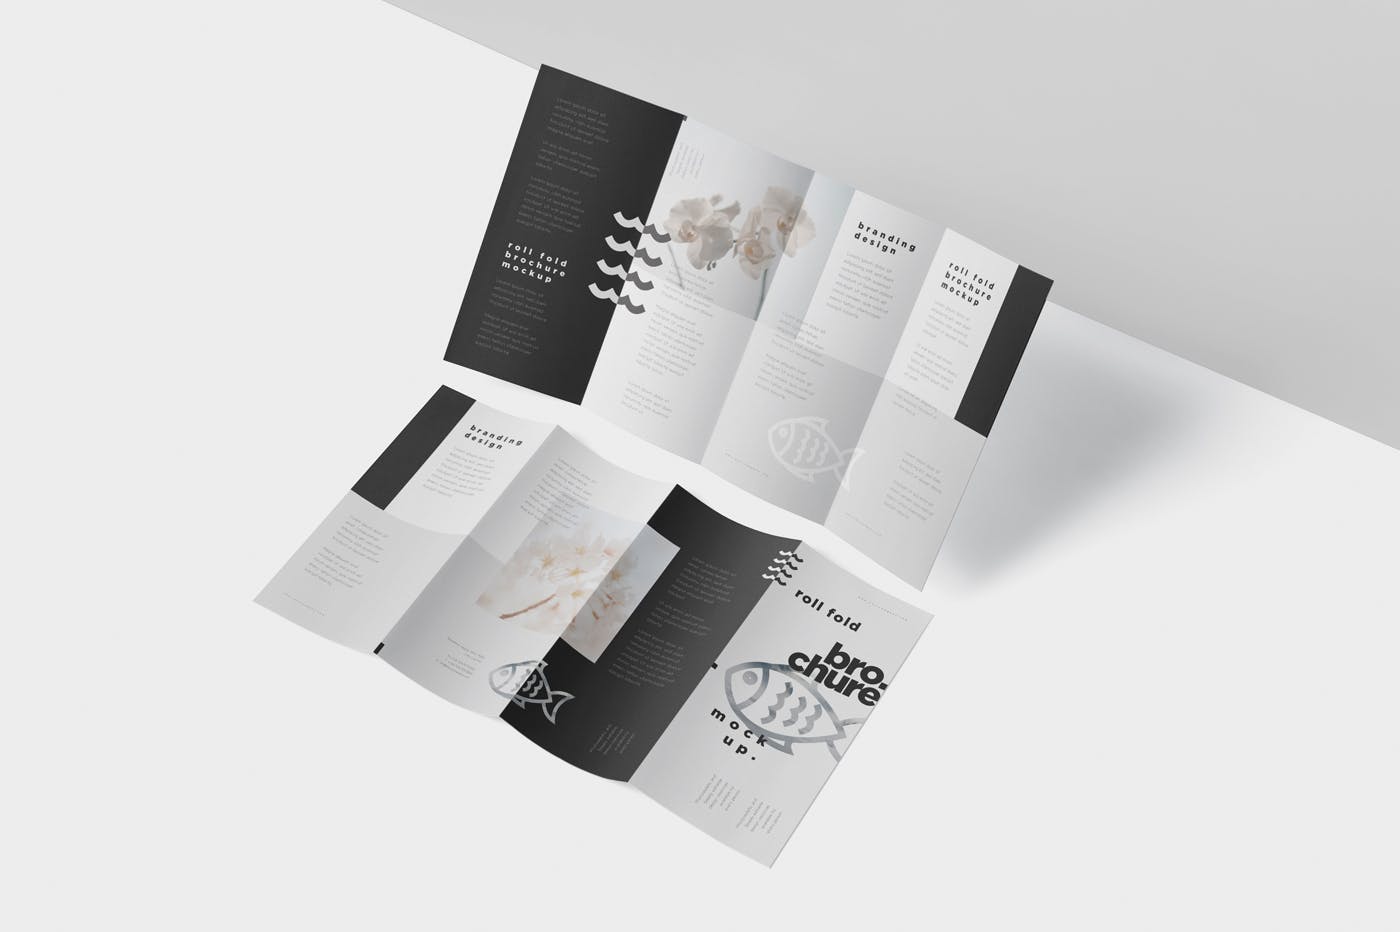 折叠设计风格企业传单/宣传册设计样机普贤居精选 Roll-Fold Brochure Mockup – DL DIN Lang Size插图(3)